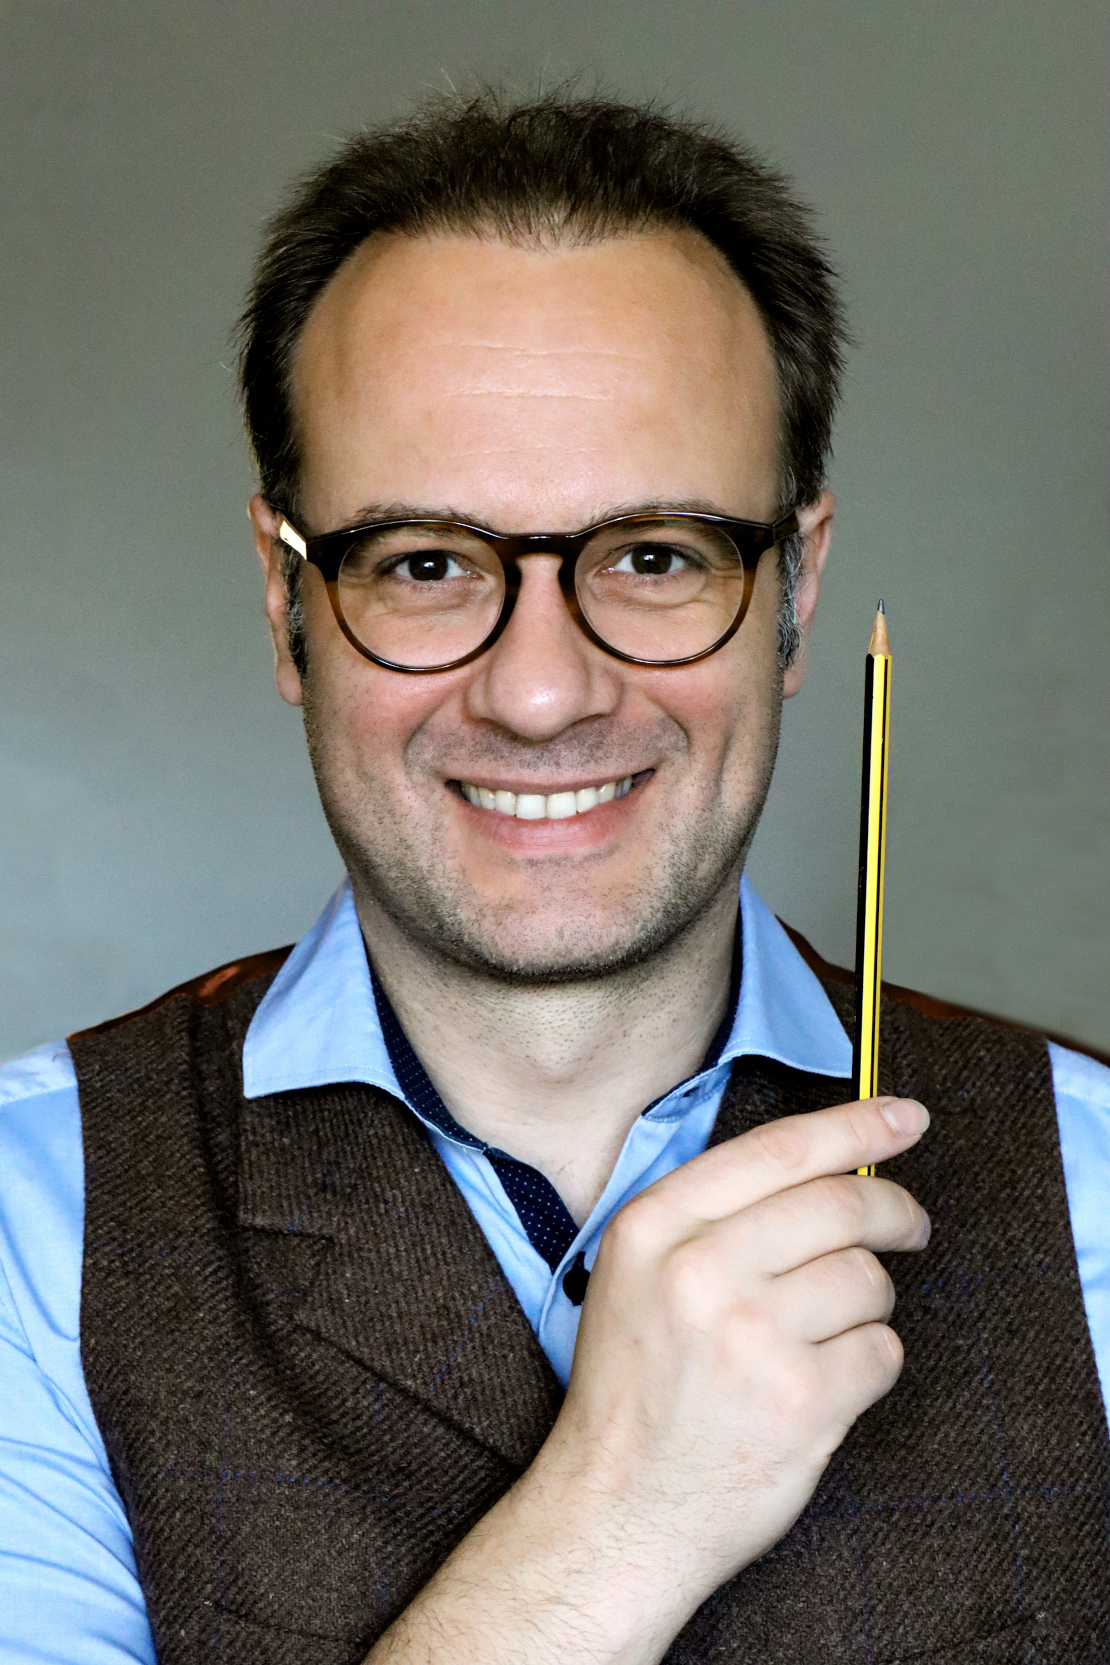 Mann mit Brille lächelt in die Kamera und hält einen Bleistift in der Hand